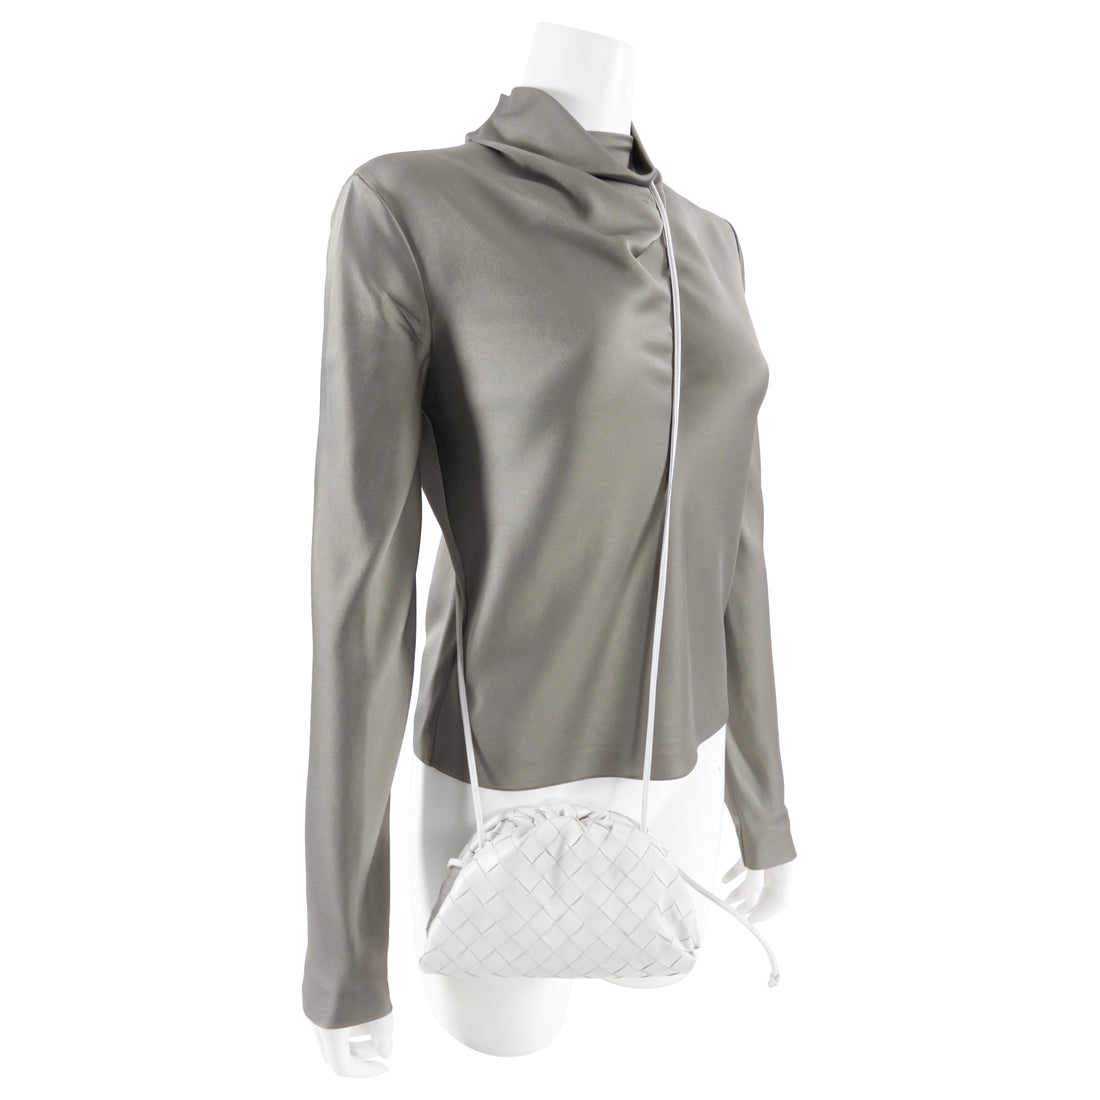 Bottega Veneta The Mini Pouch Bag in White Leather Intrecciato — UFO No More